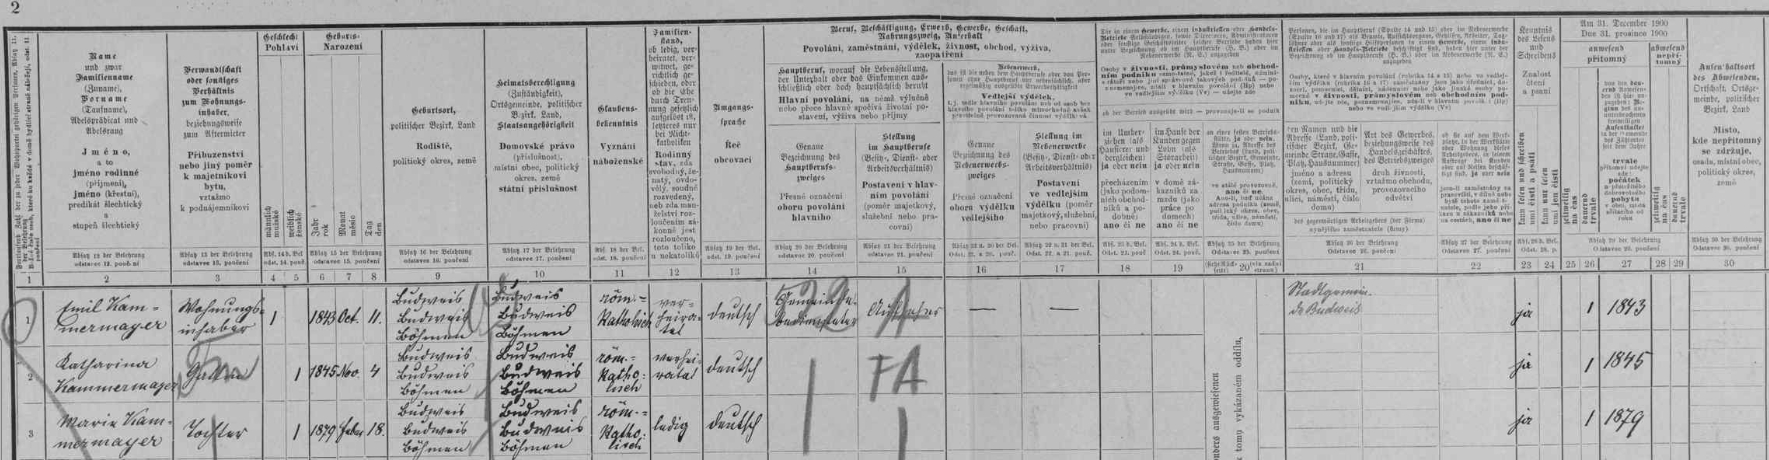 Arch sčítání lidu z roku 1900 pro byt č. 1 v domě čp. 10 v českobudějovické Biskupské ulici s rodinou Kammermayerovou